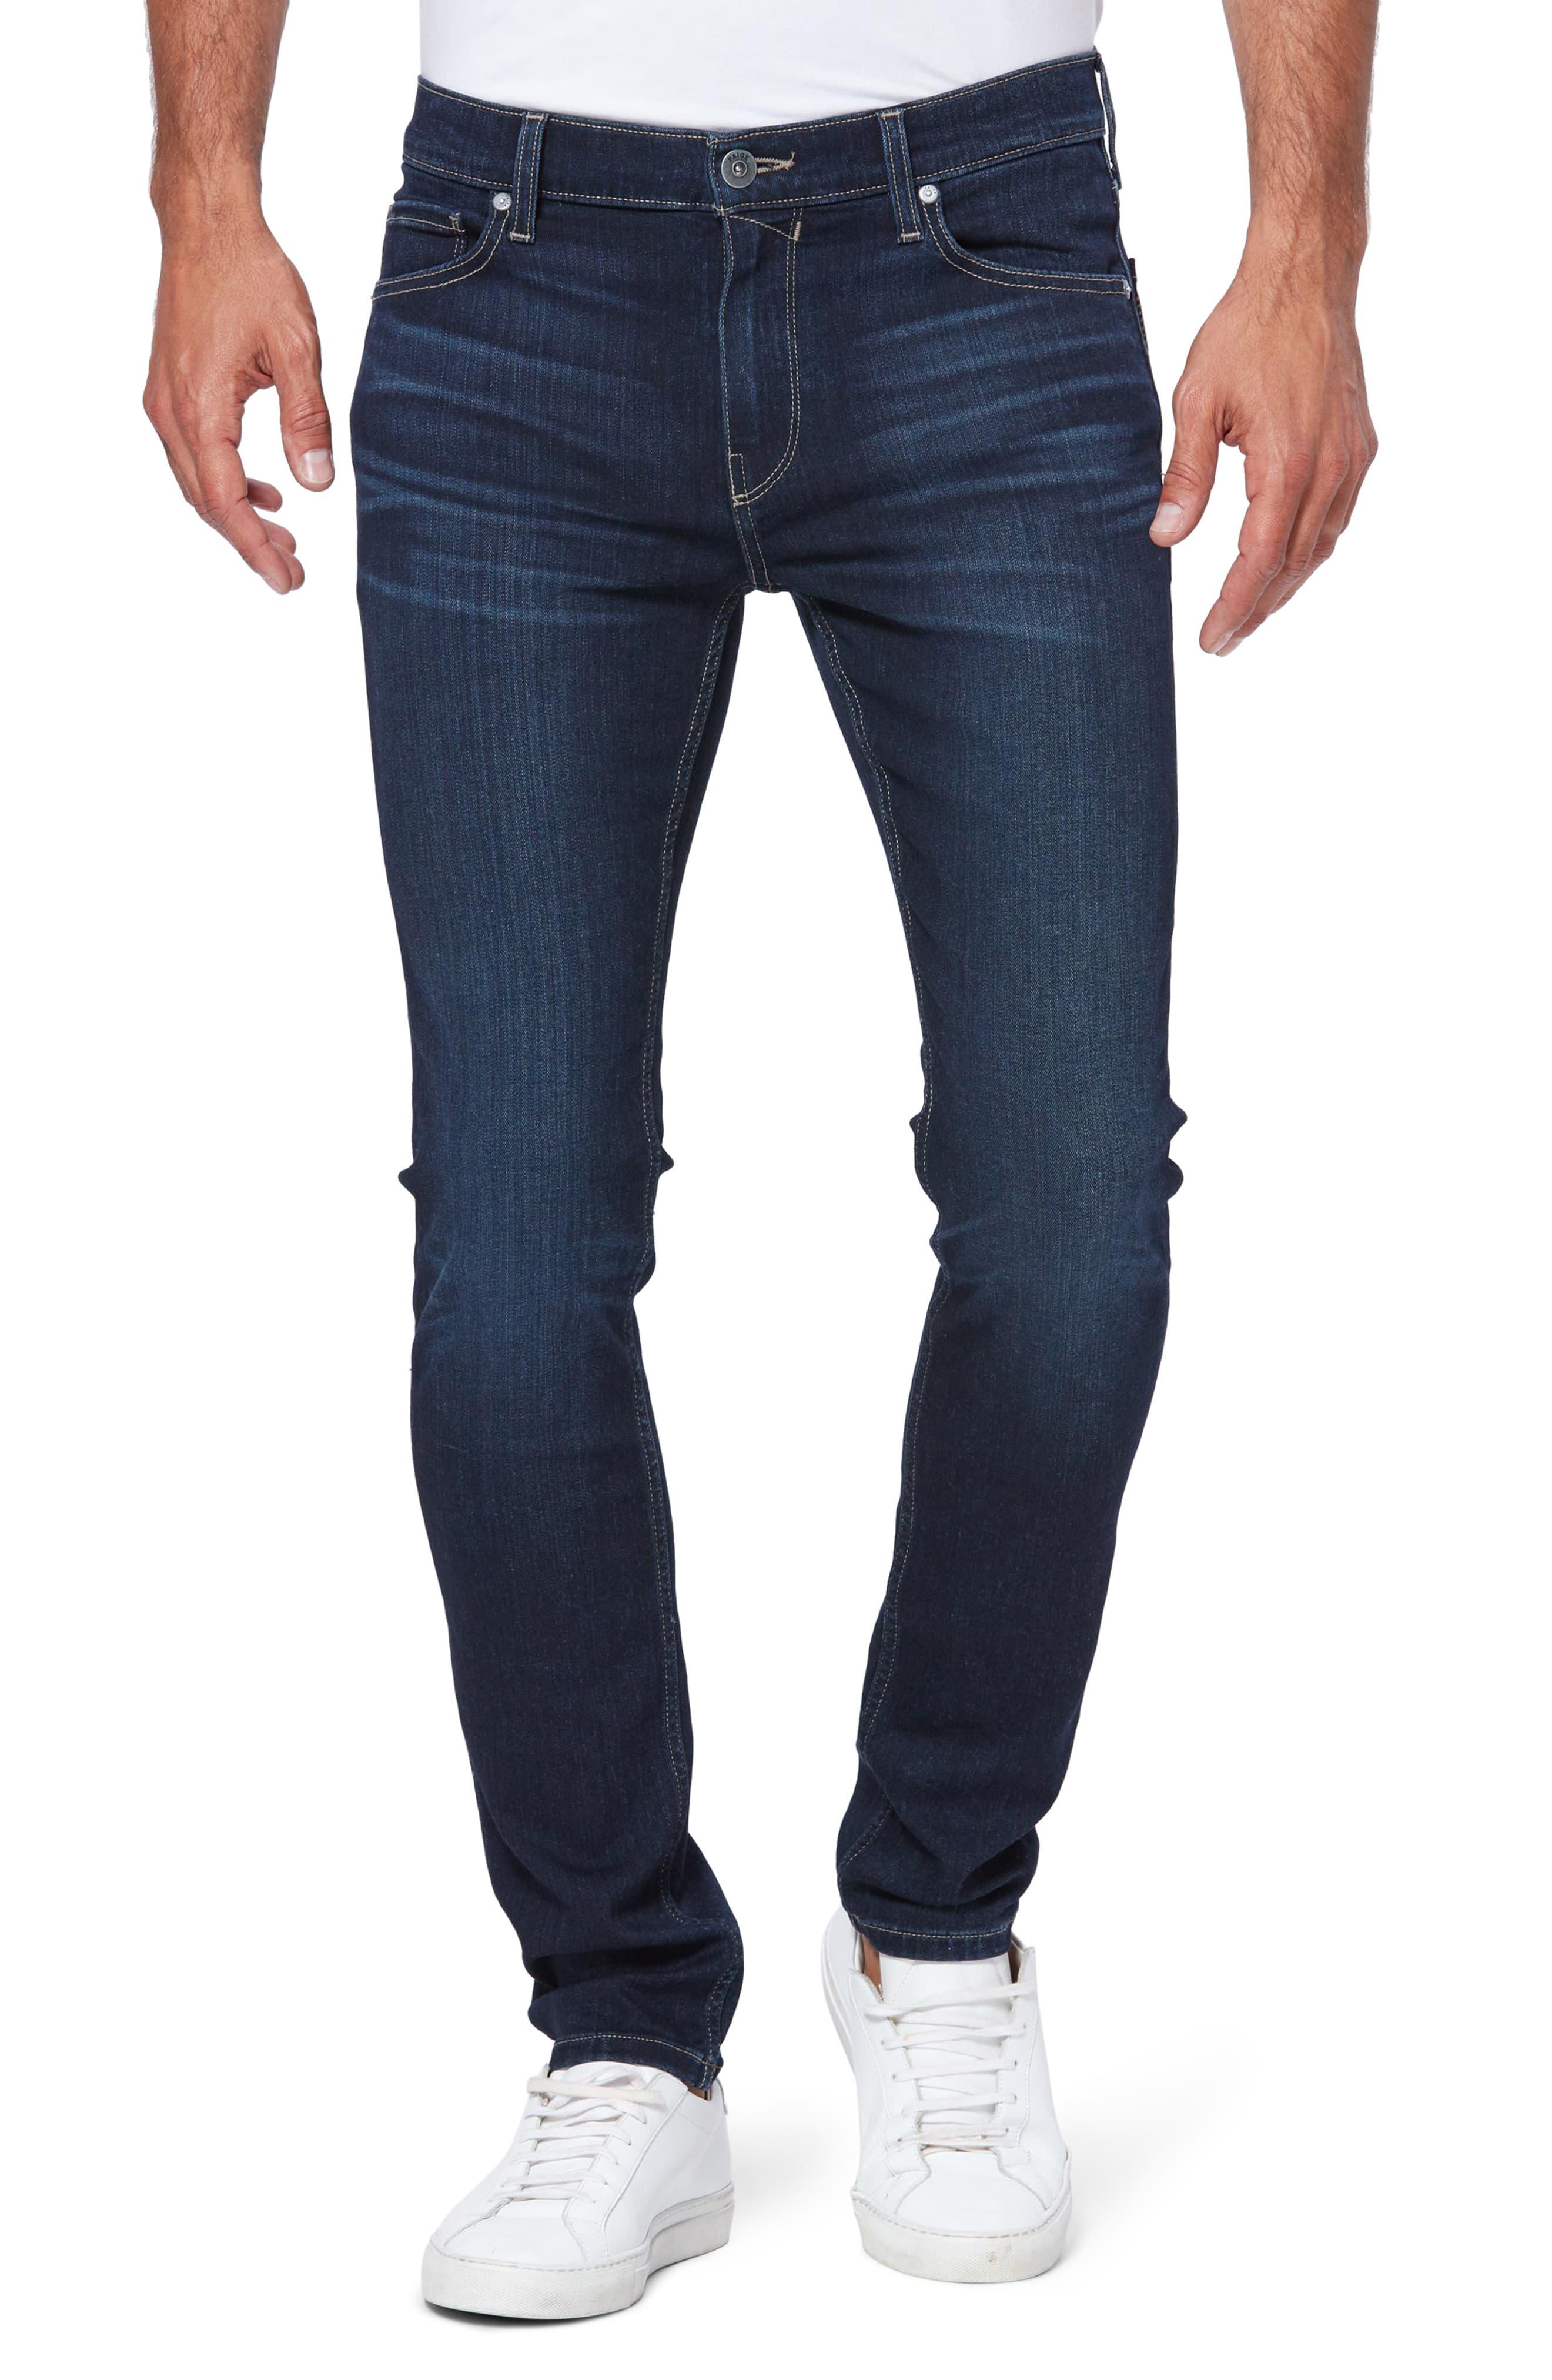 PAIGE Denim Transcend Croft Skinny Fit Jeans in Blue for Men - Lyst